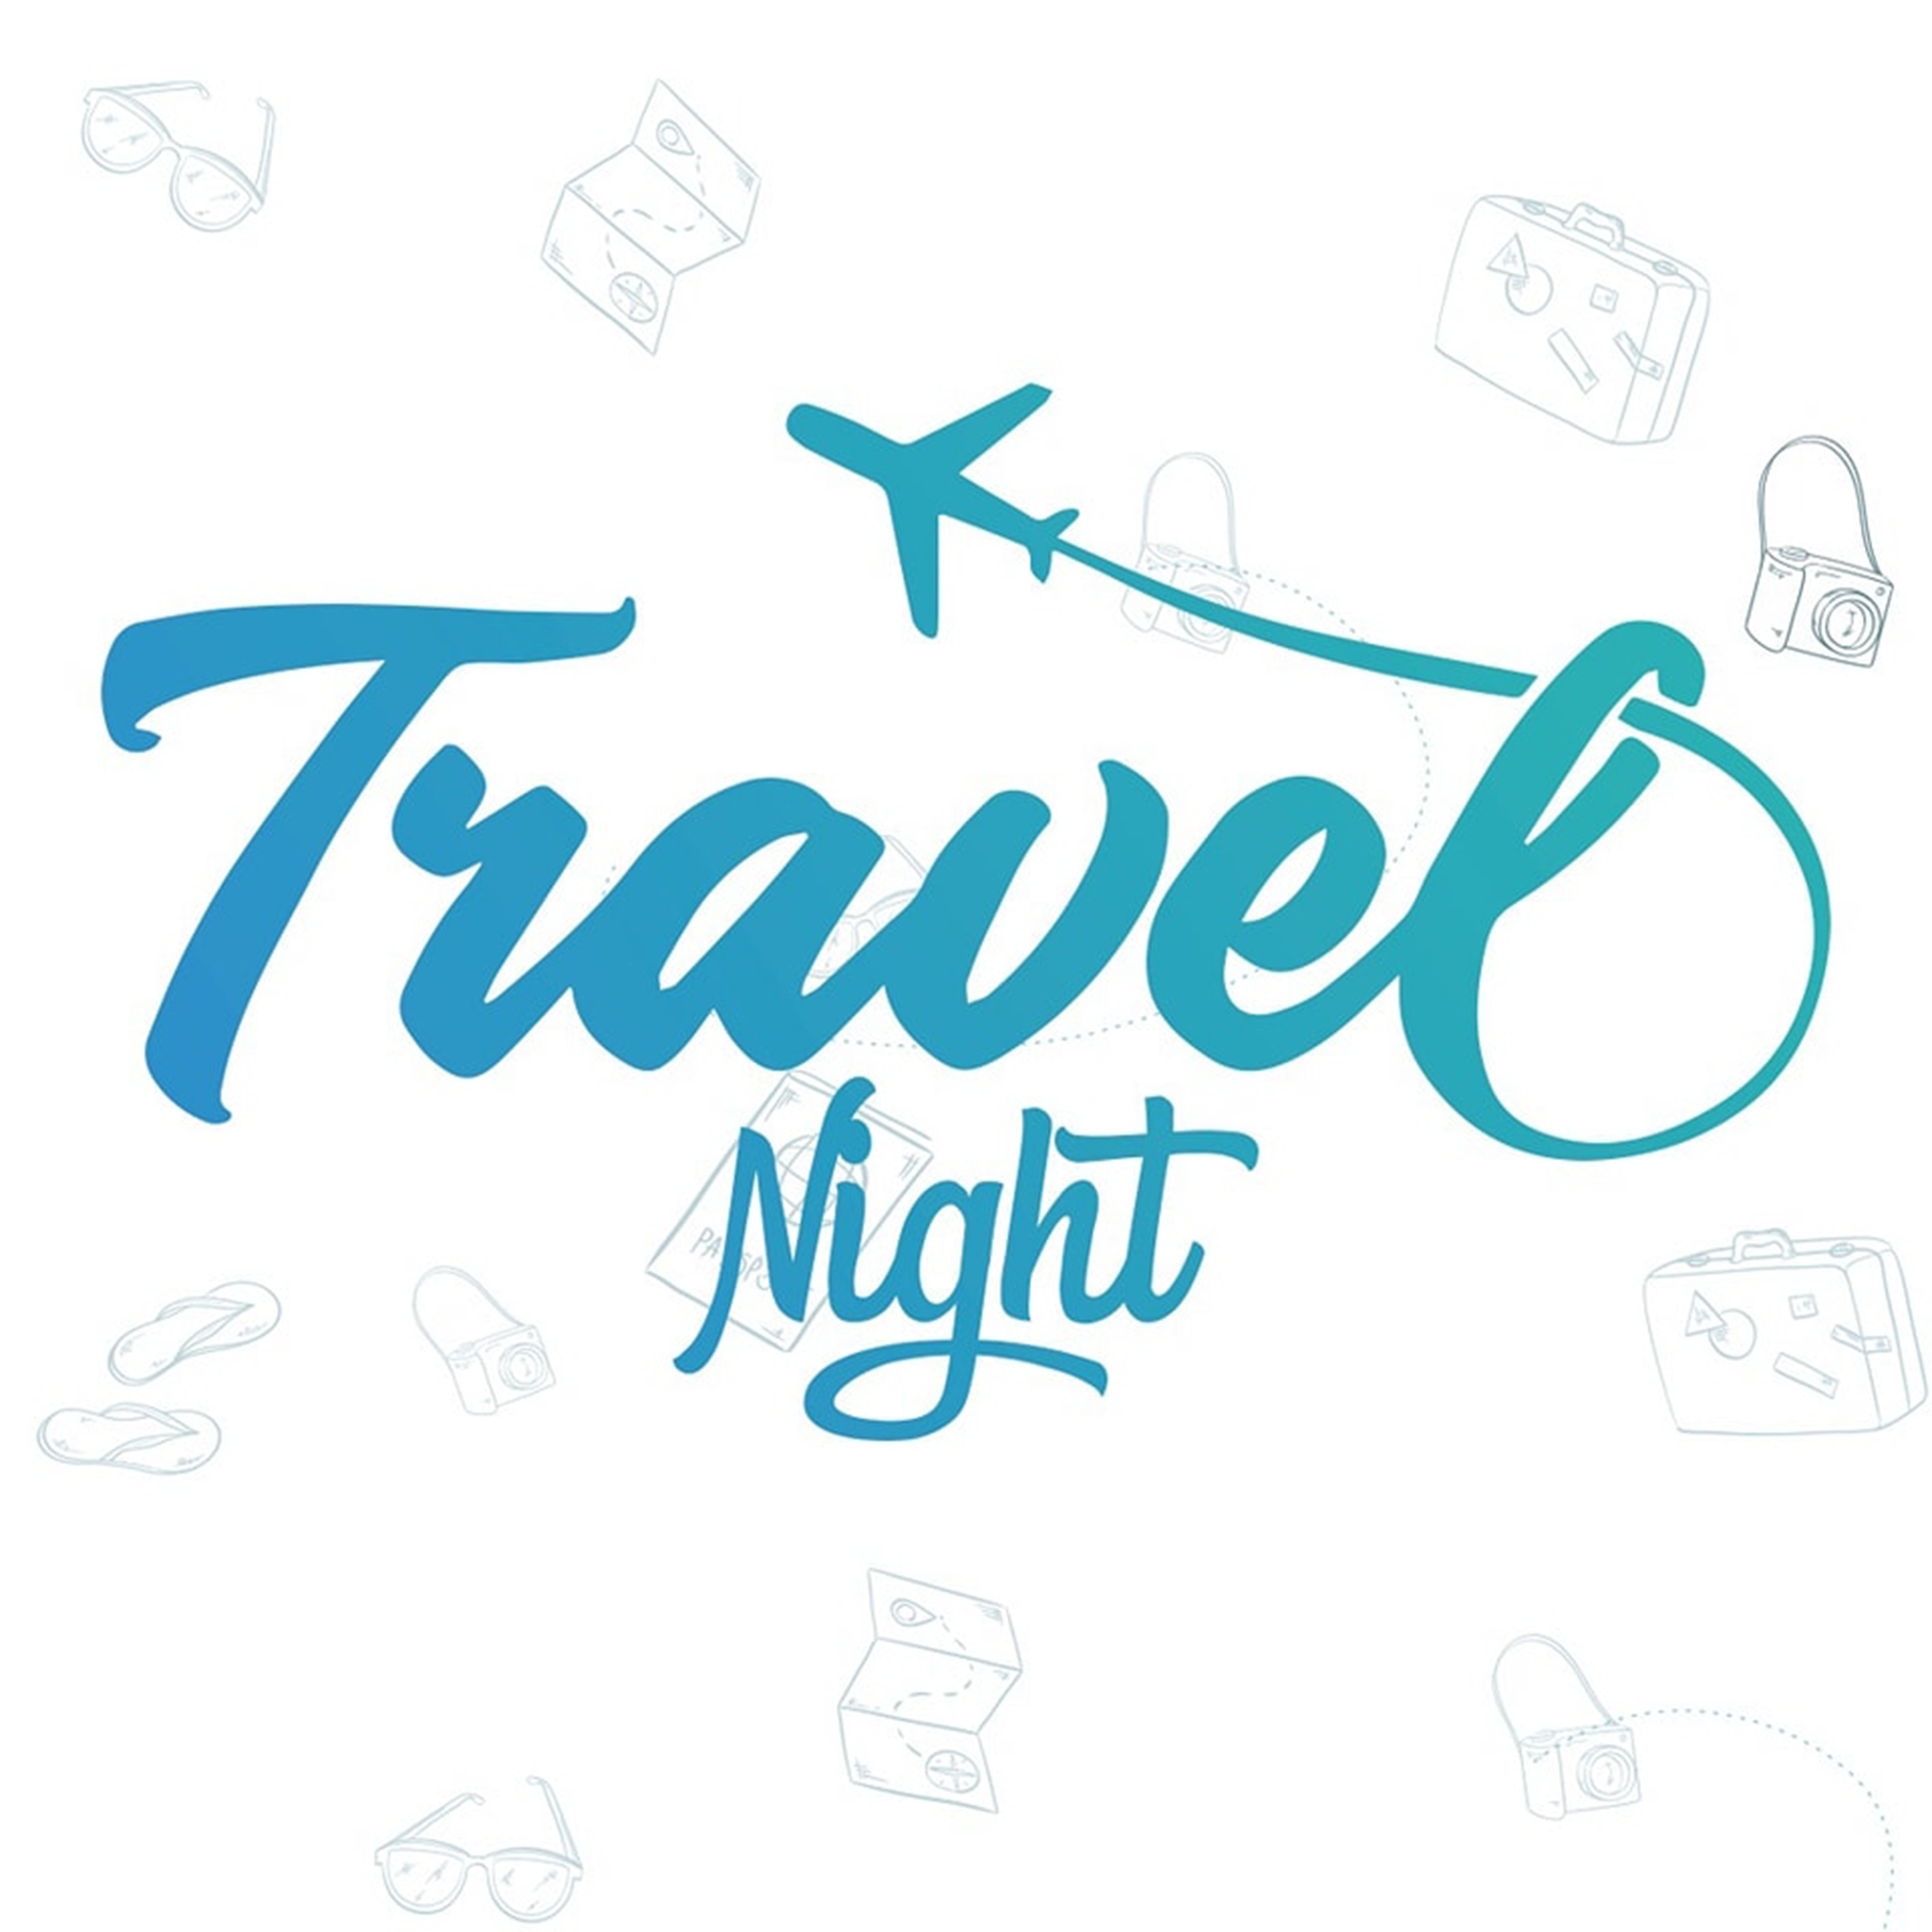 Travel Night - Travel marketing agency